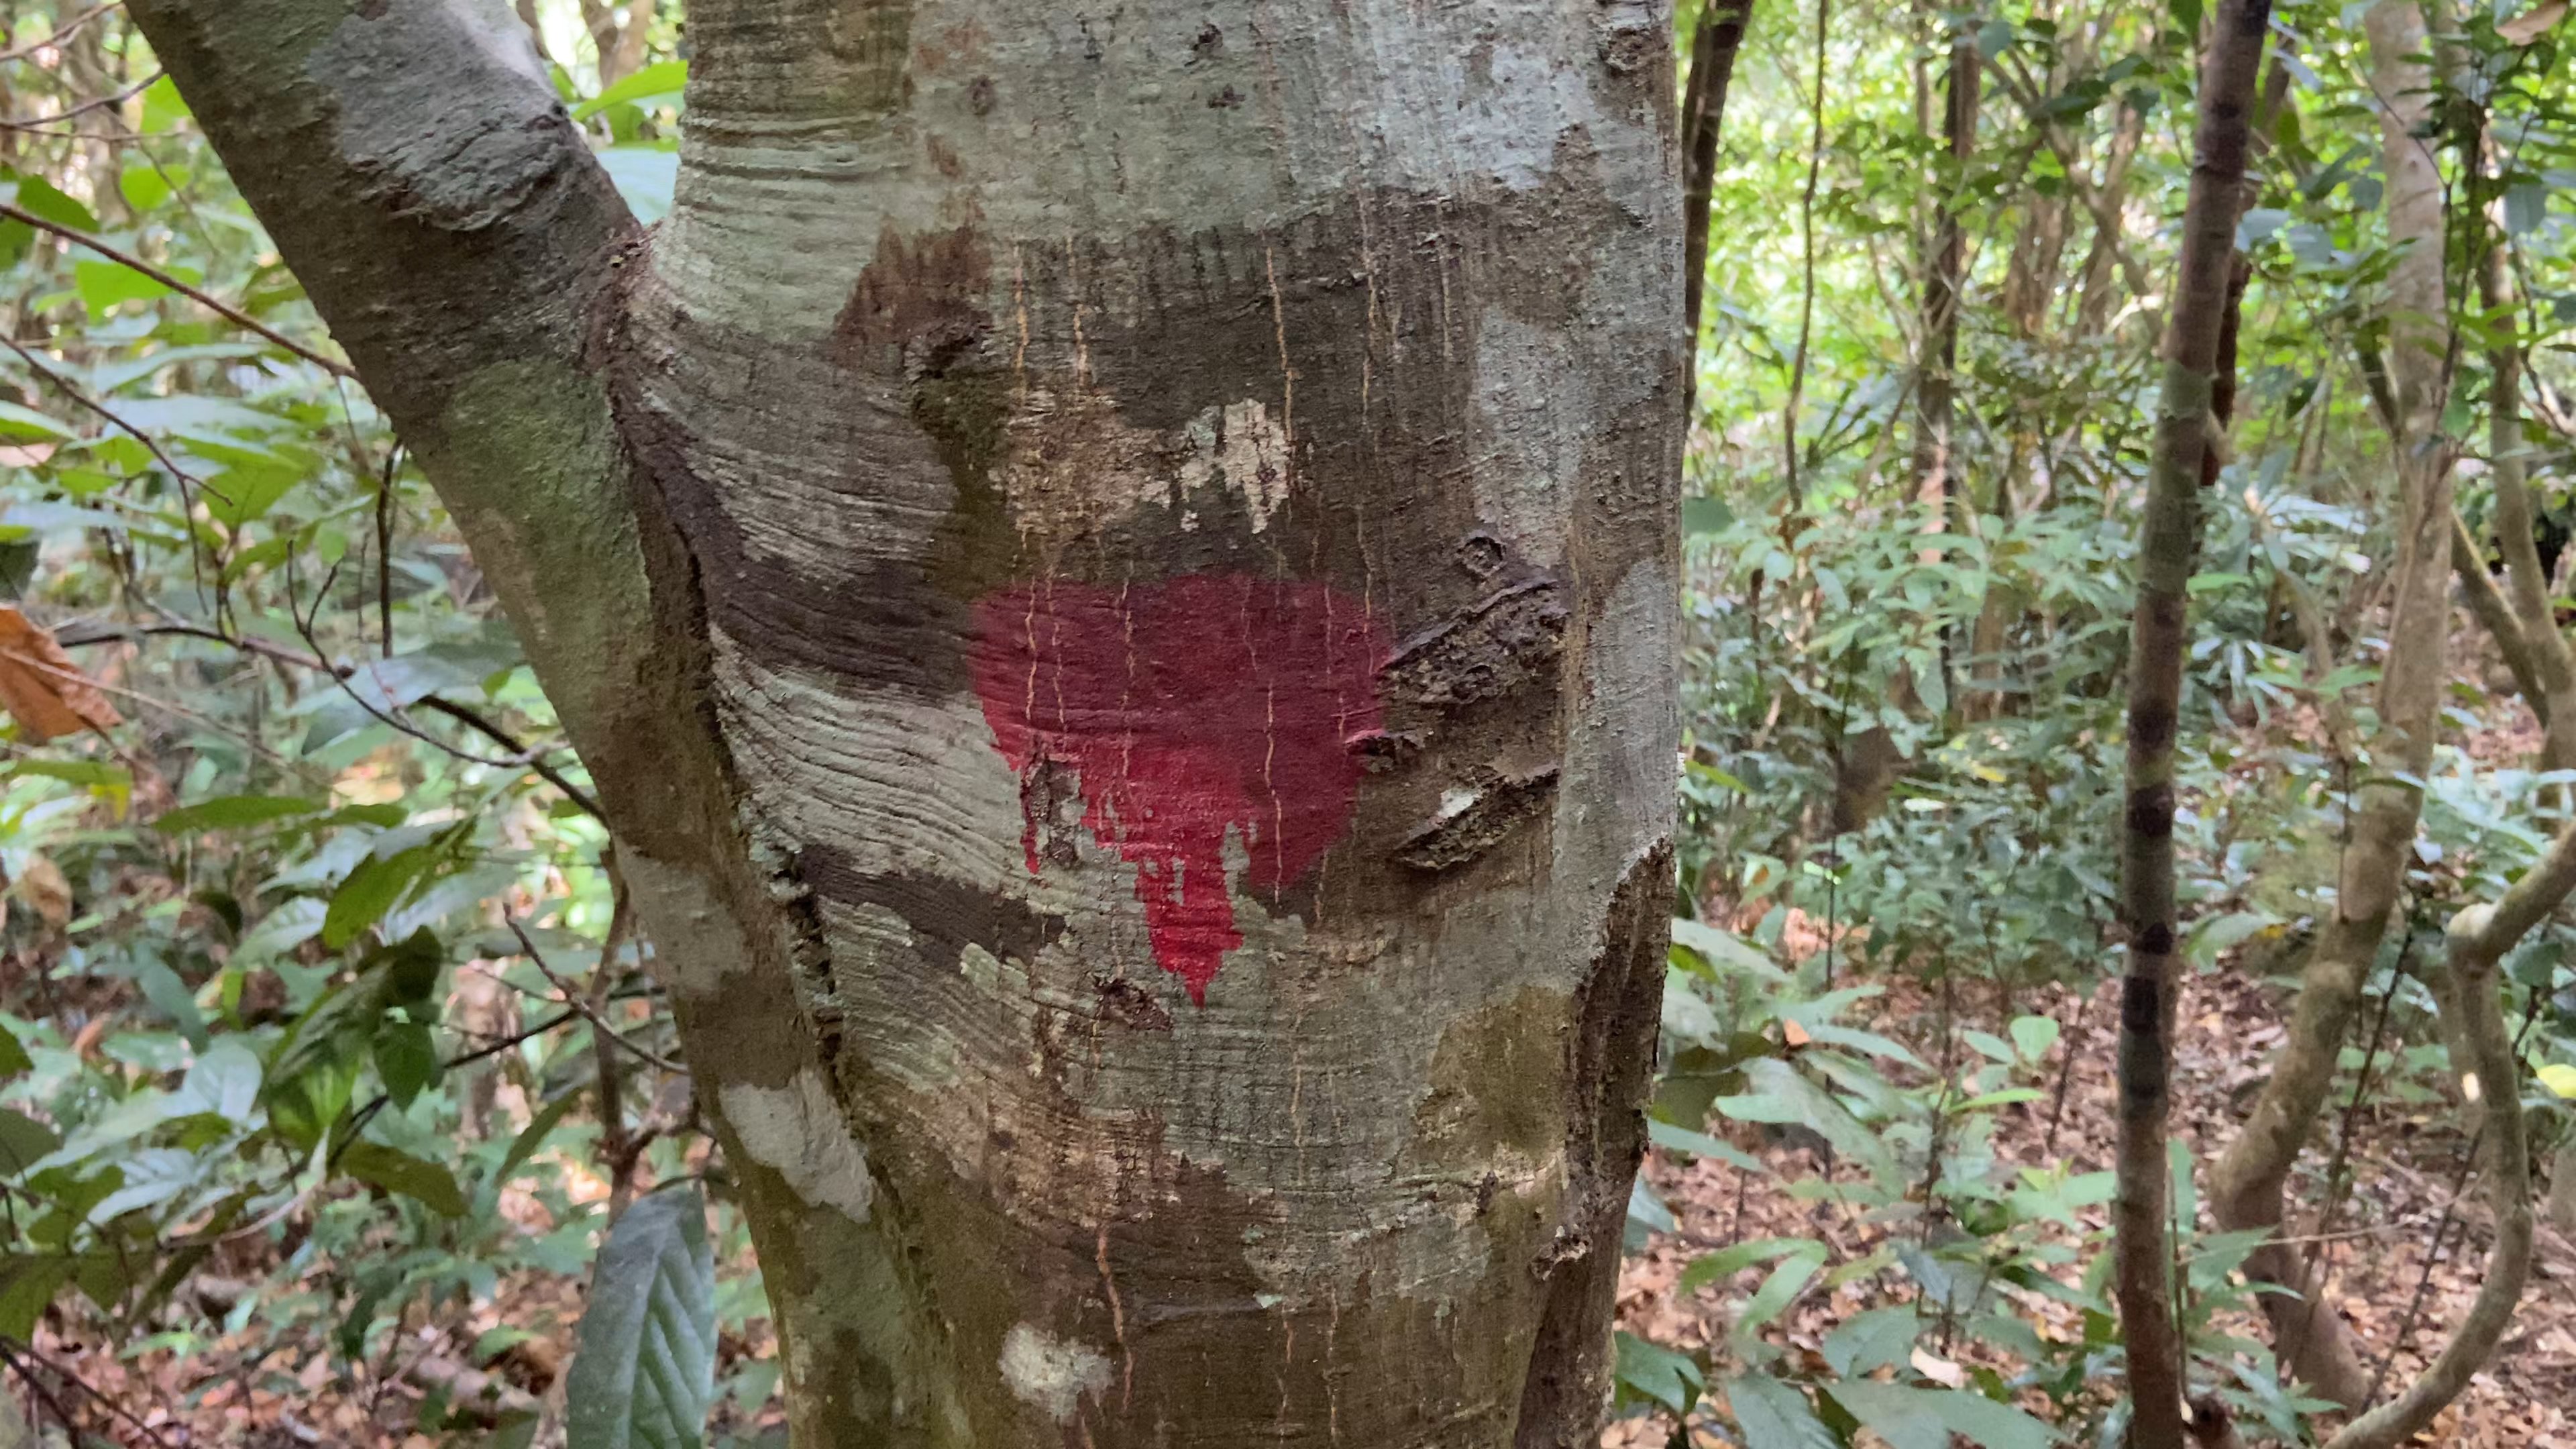 Lực lượng chức năng đánh dấu đỏ lên các thân cây để xác định phương hướng.